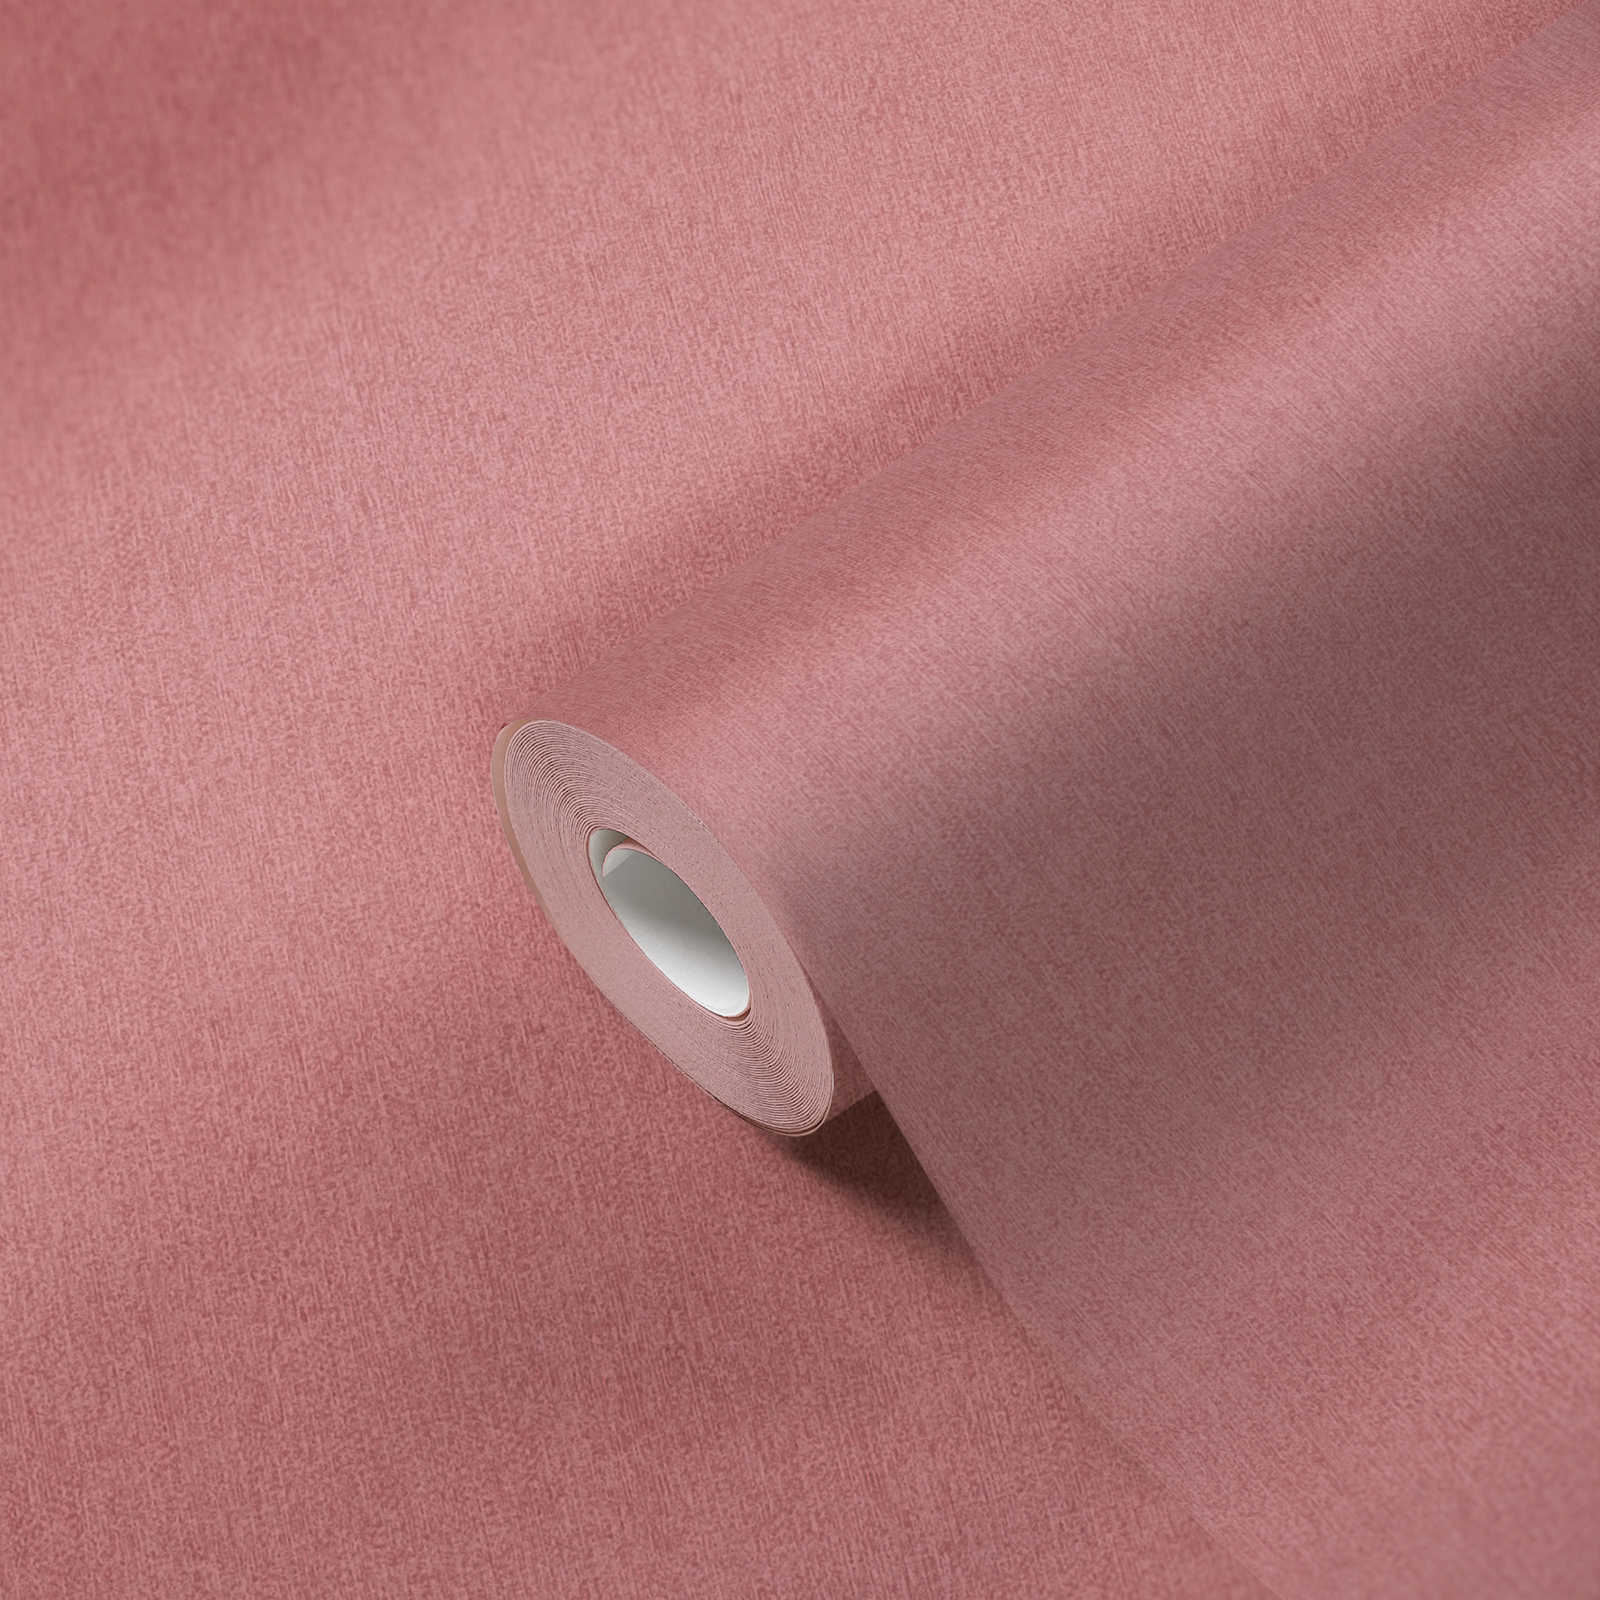             Papier peint intissé uni & mat avec motif structuré - rose
        